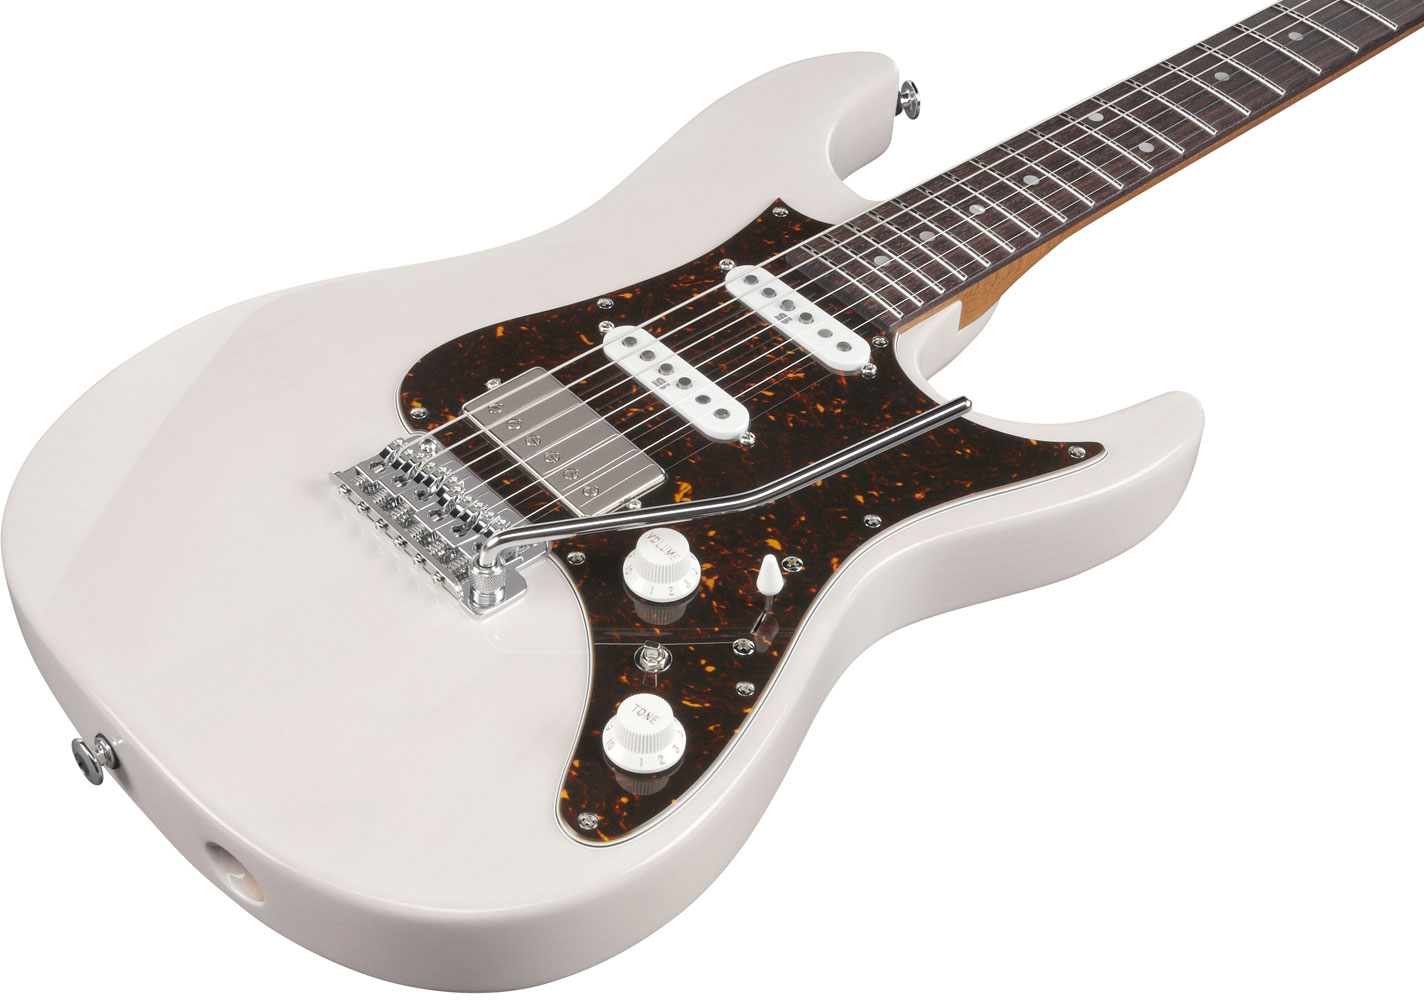 Ibanez Az2204n Awd Prestige Jap Hss Seymour Duncan Trem Rw - Antique White Blonde - Elektrische gitaar in Str-vorm - Variation 1